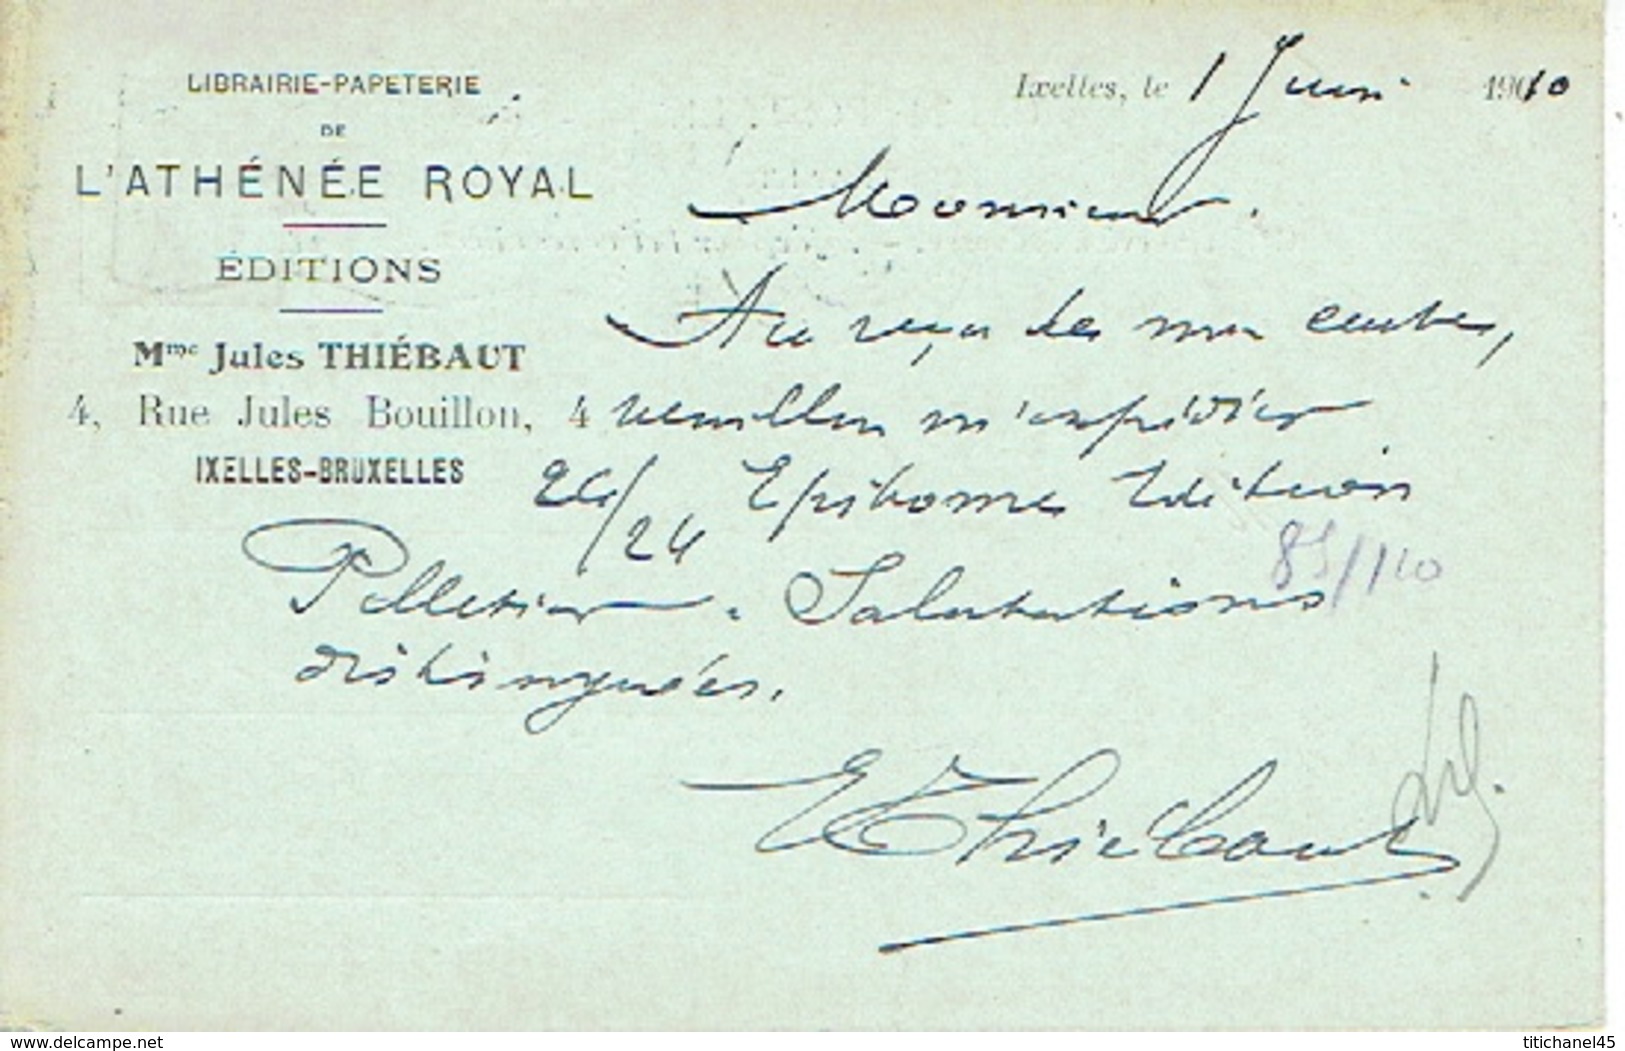 CP/PK Publicitaire IXELLES-BRUXELLES 1910 - Librairie-Papeterie De L'ATHENEE ROYAL - EDITIONS - Mme Jules THIEBAUT - Elsene - Ixelles